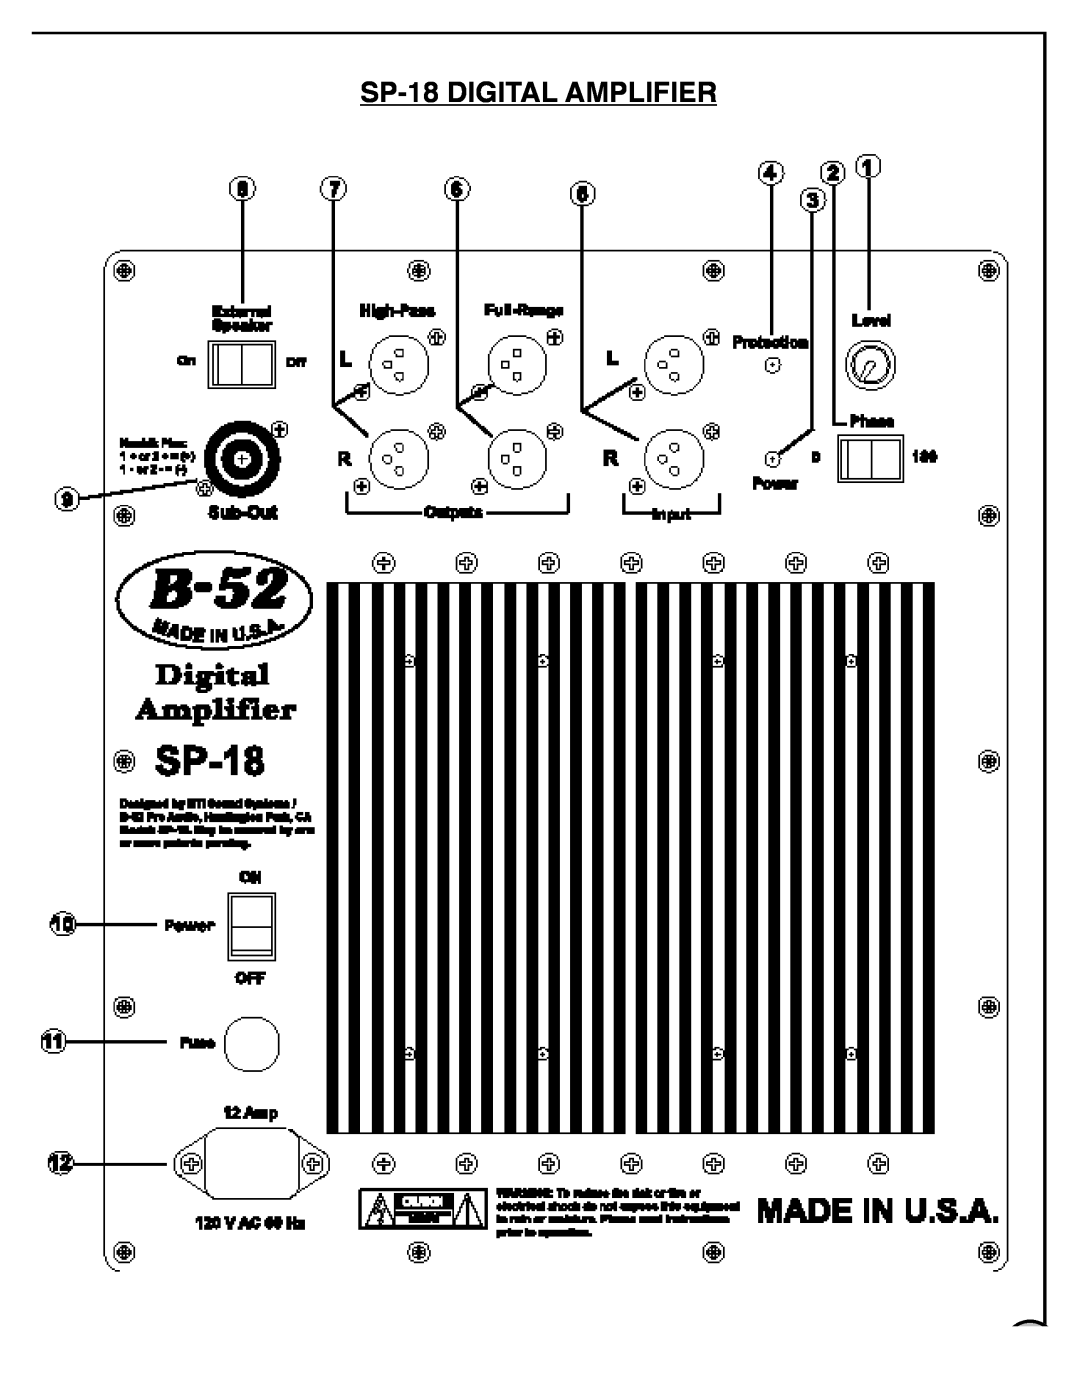 Audio Pro manual SP-18DIGITAL AMPLIFIER 